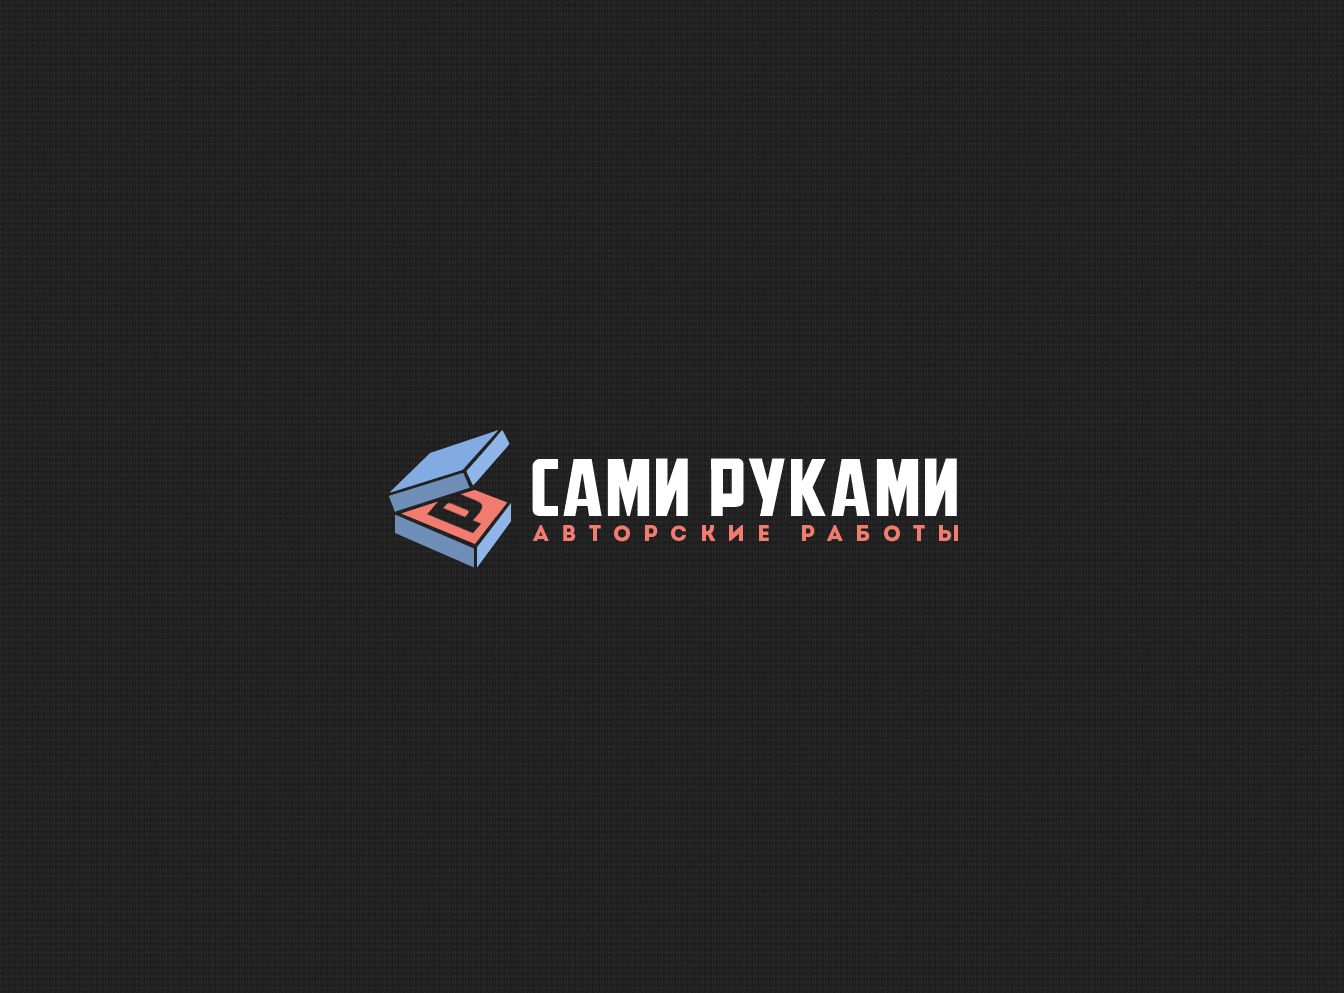 Лого и фирменный стиль для СамиРуками - дизайнер webgrafika